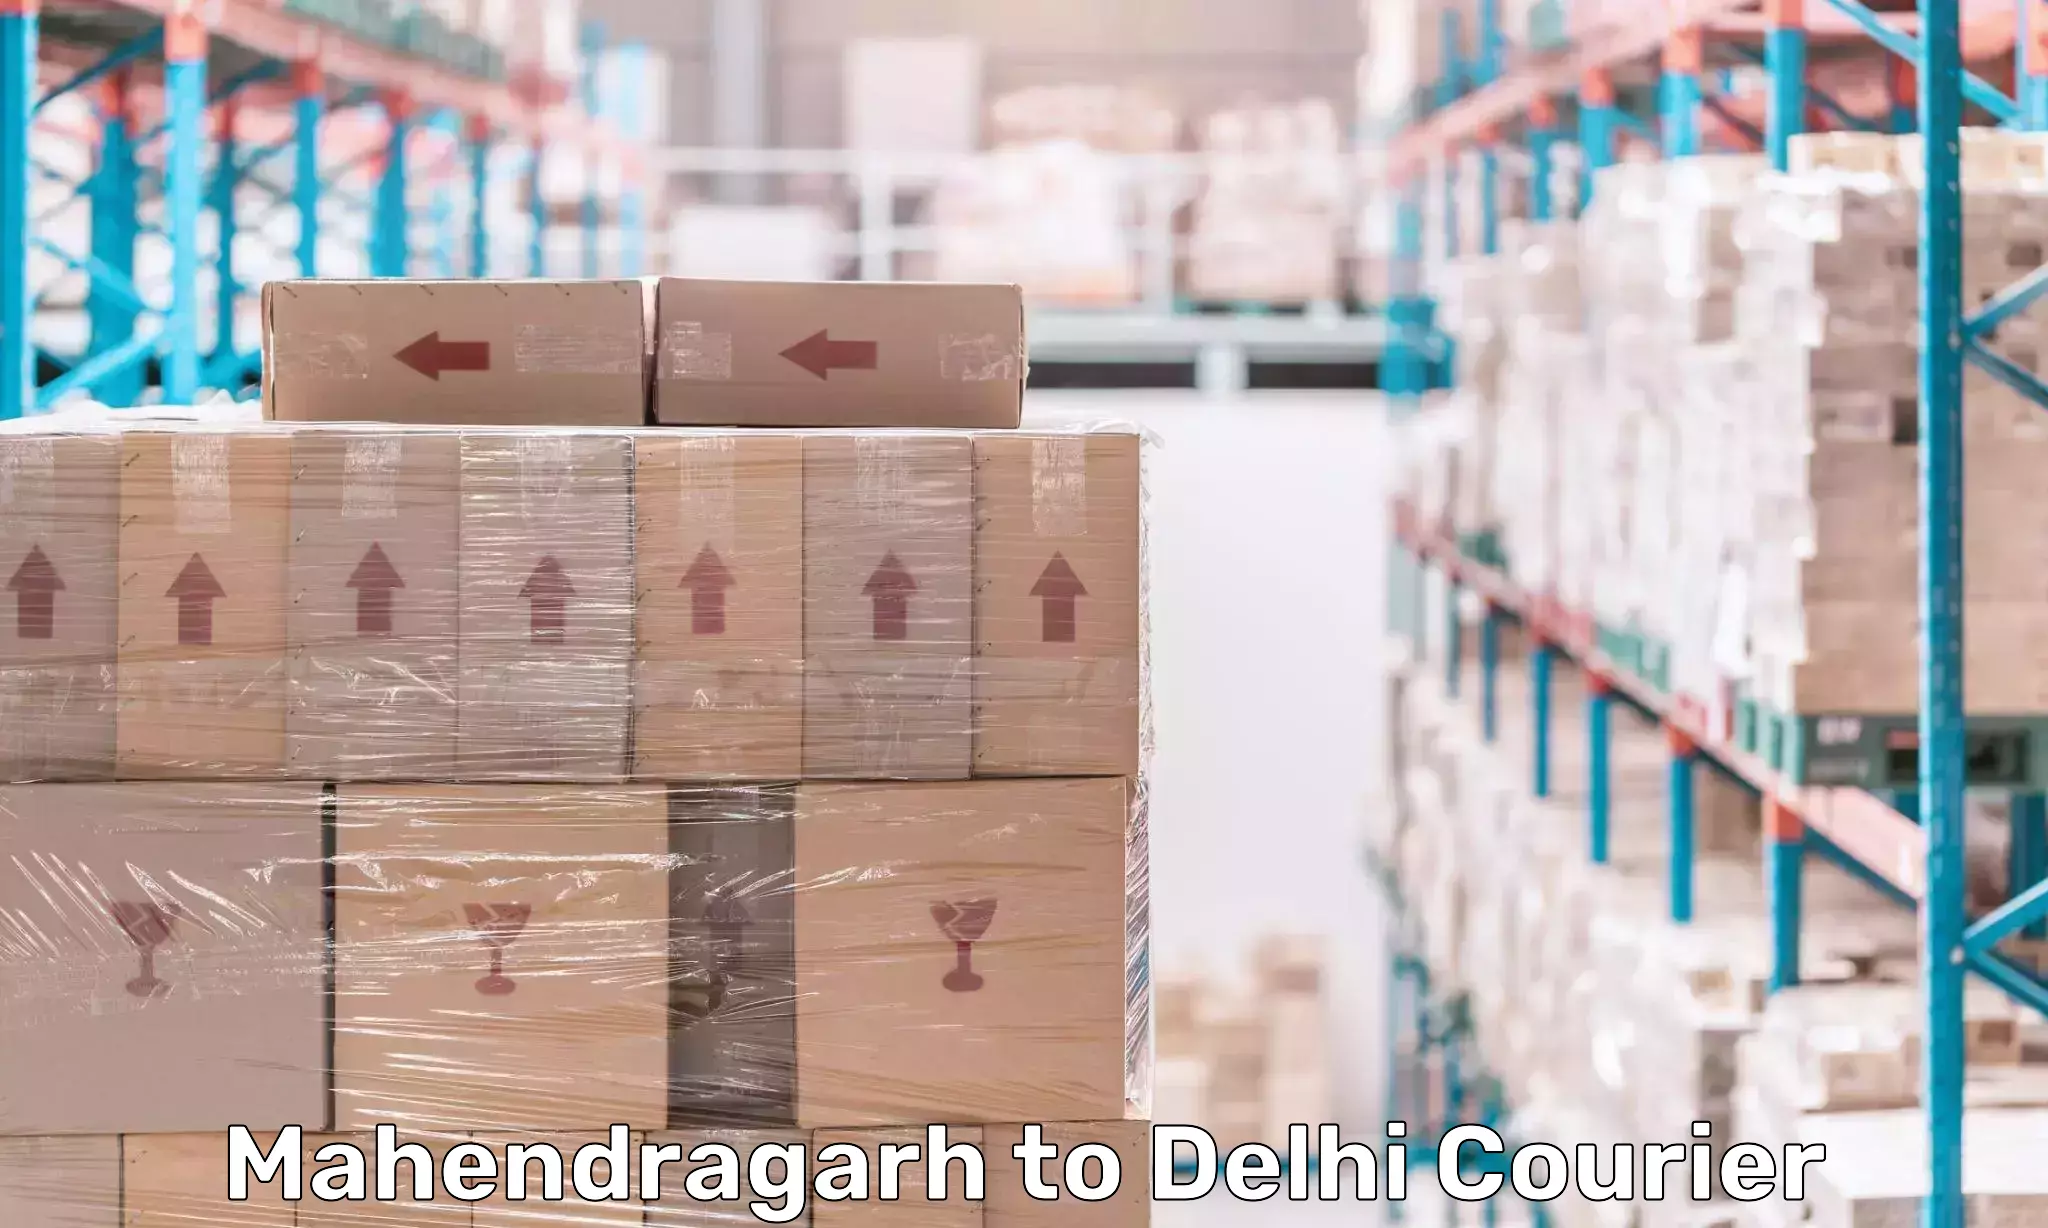 Express delivery capabilities Mahendragarh to Jawaharlal Nehru University New Delhi